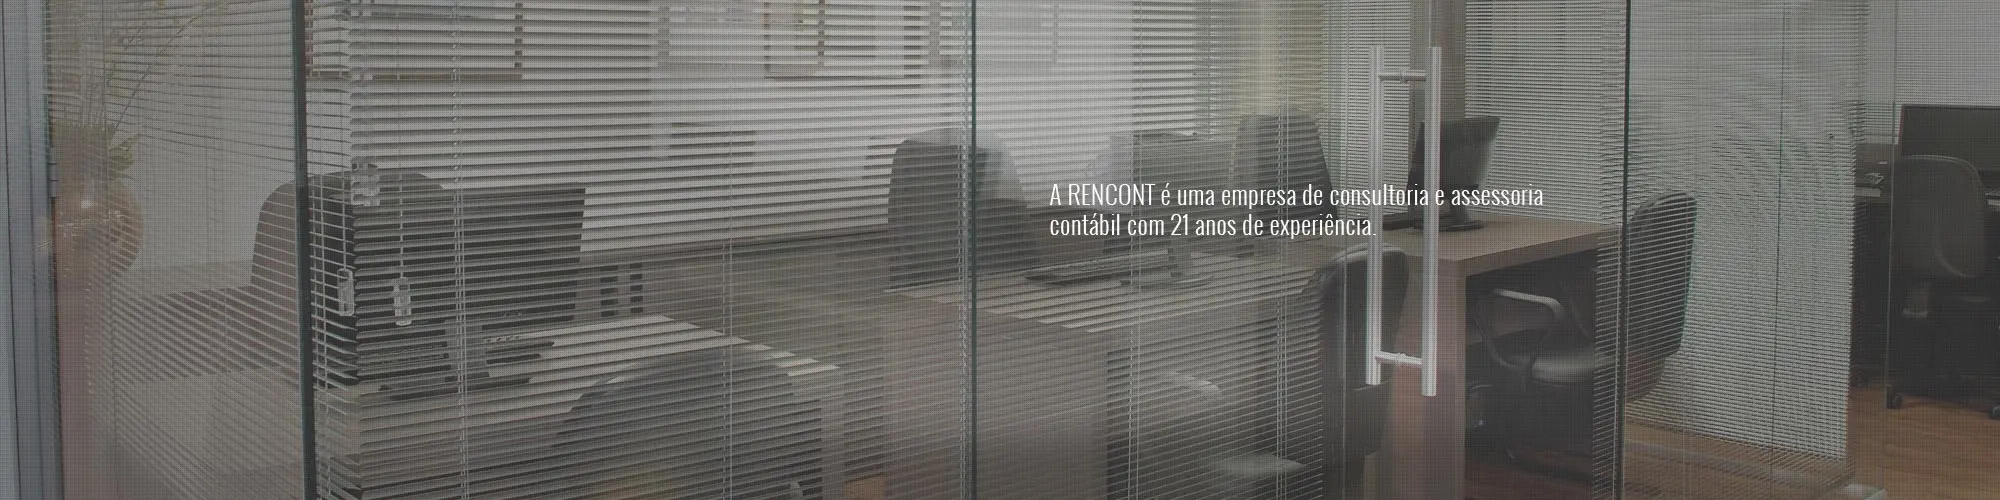 A Rencont é uma empresa de consultoria e assessoria contábil 